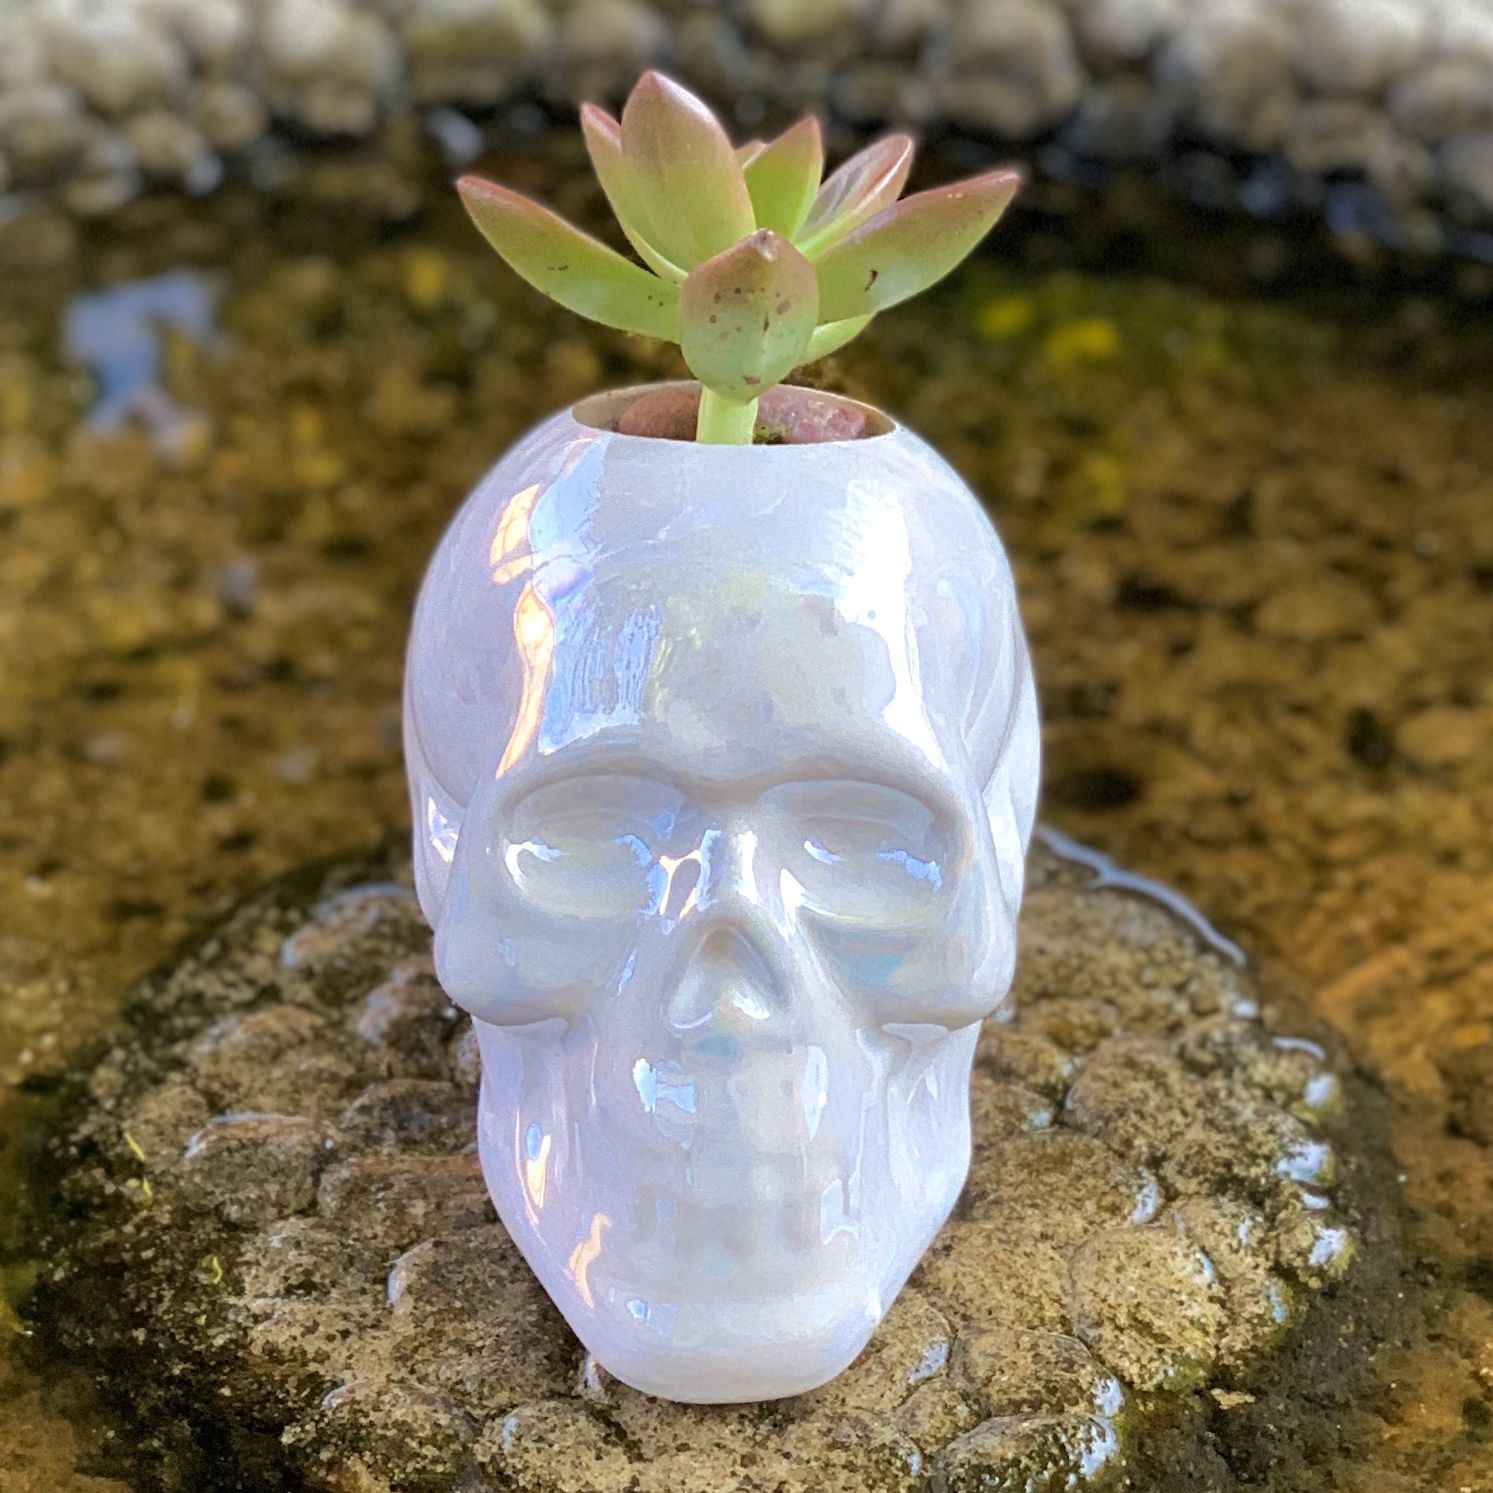 Skull + Live plant